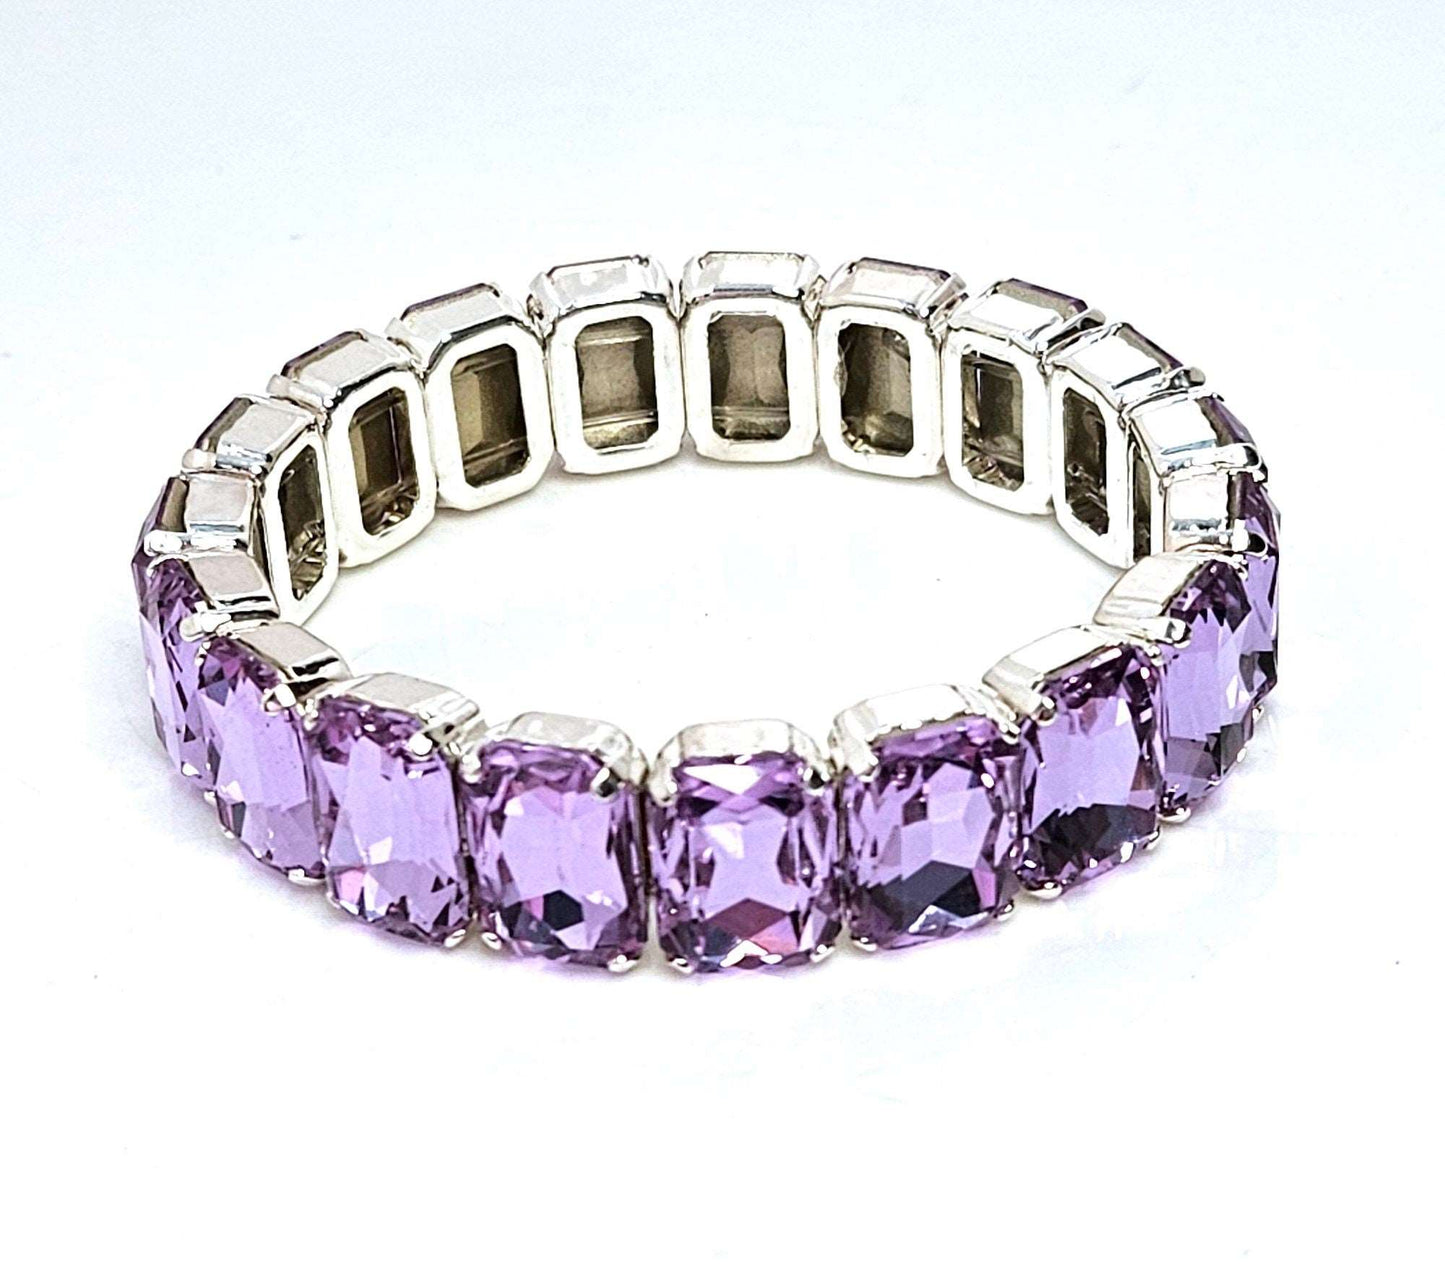 Violet Crystal Bracelet, Stretch Bracelet, Purple Crystal Jewelry, Rectangle Statement Bracelet, Bracelets For Women